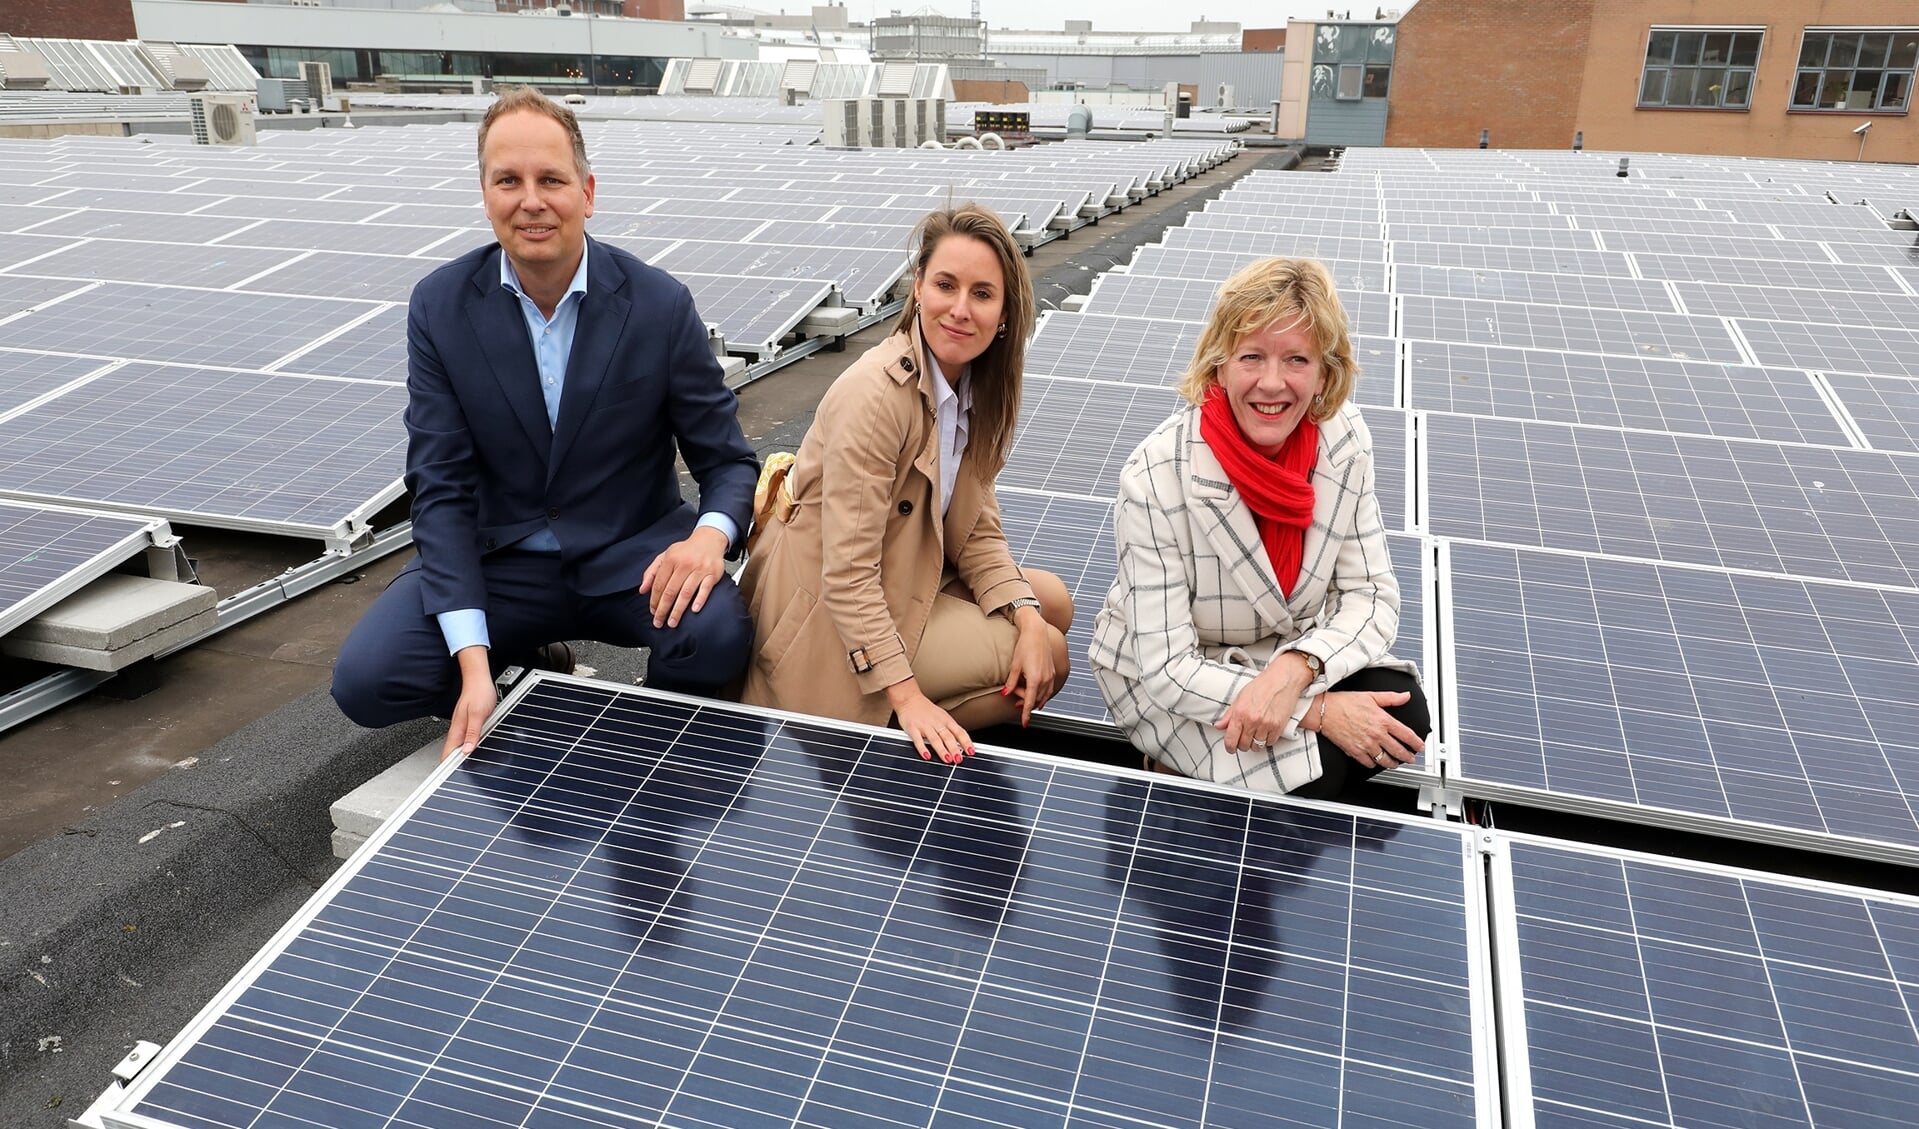 Vlnr. Duco Beltman (Wereldhave), Doris Slegtenhorst (Wereldhave) en wethouder Monique Stam bij de zonnepanelen op het dak van Middenwaard.